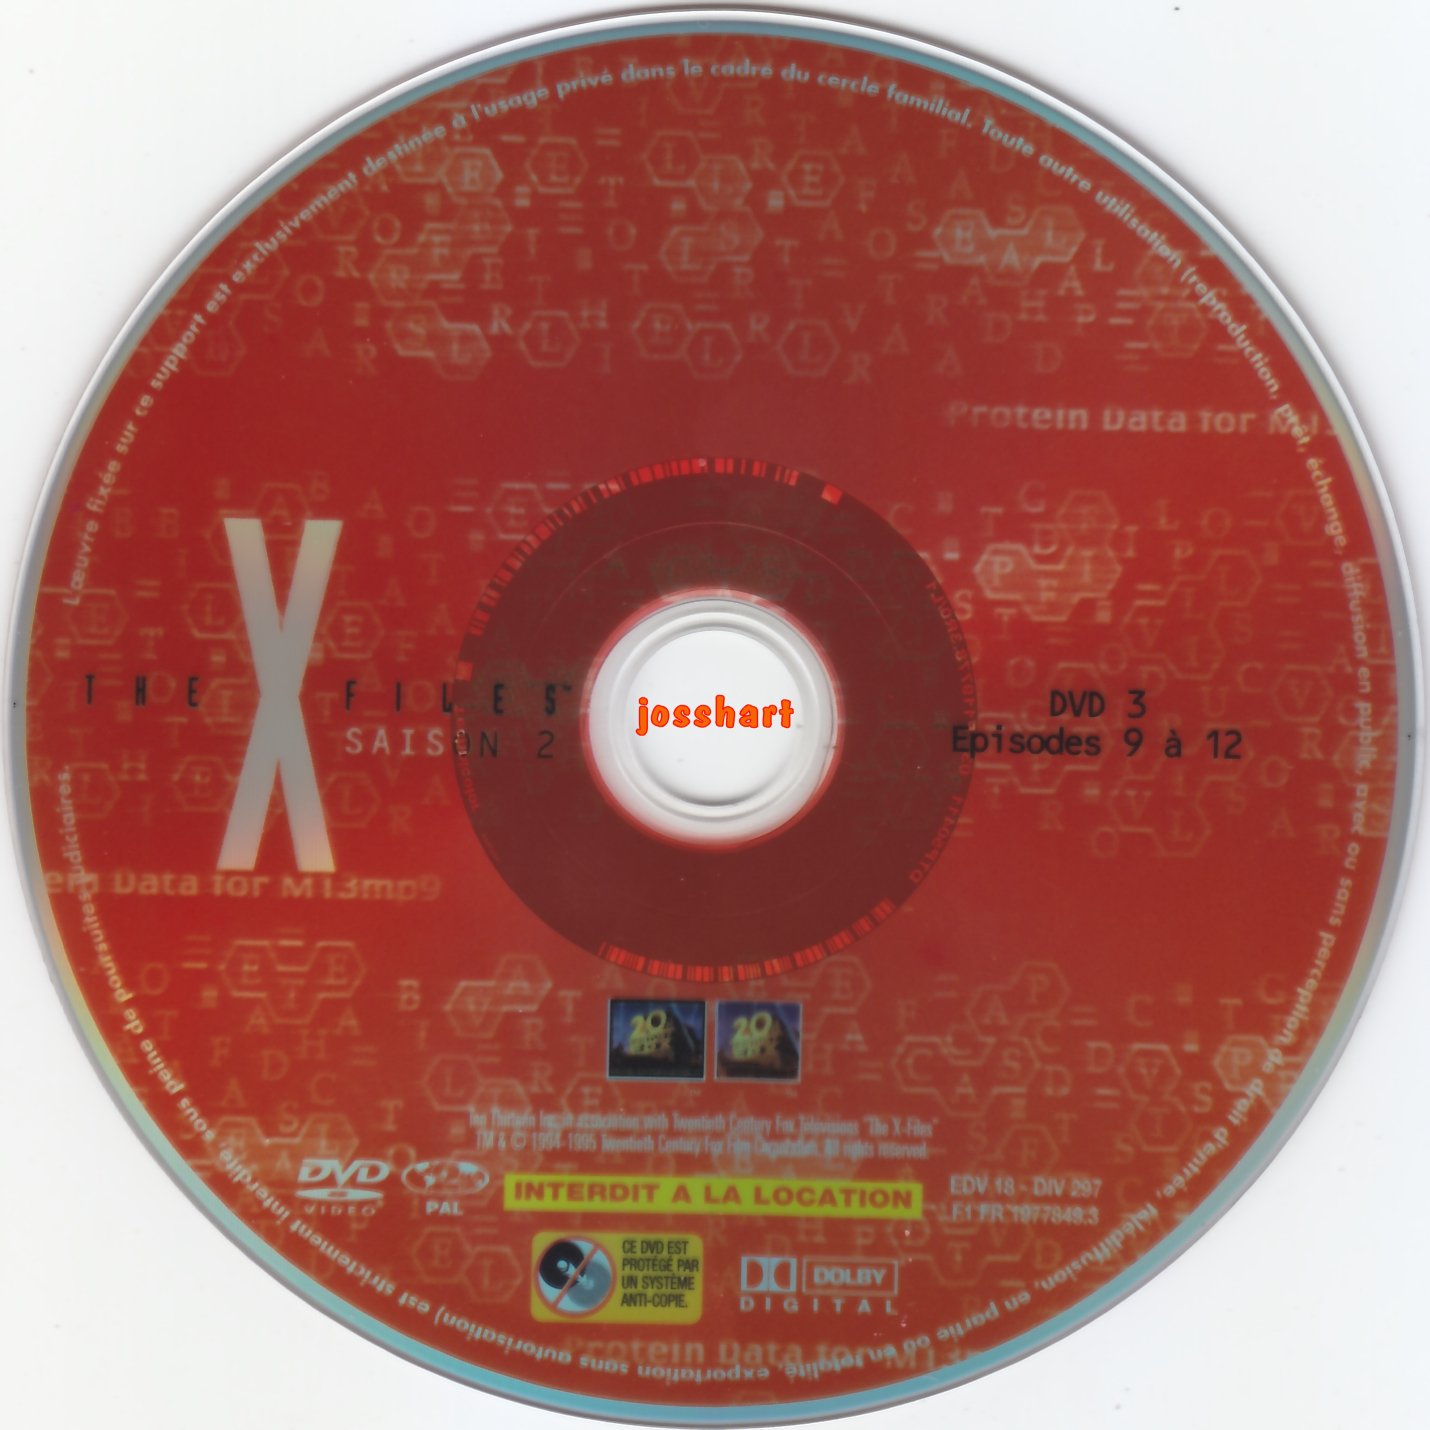 The X Files Saison 2 DVD 3 v2